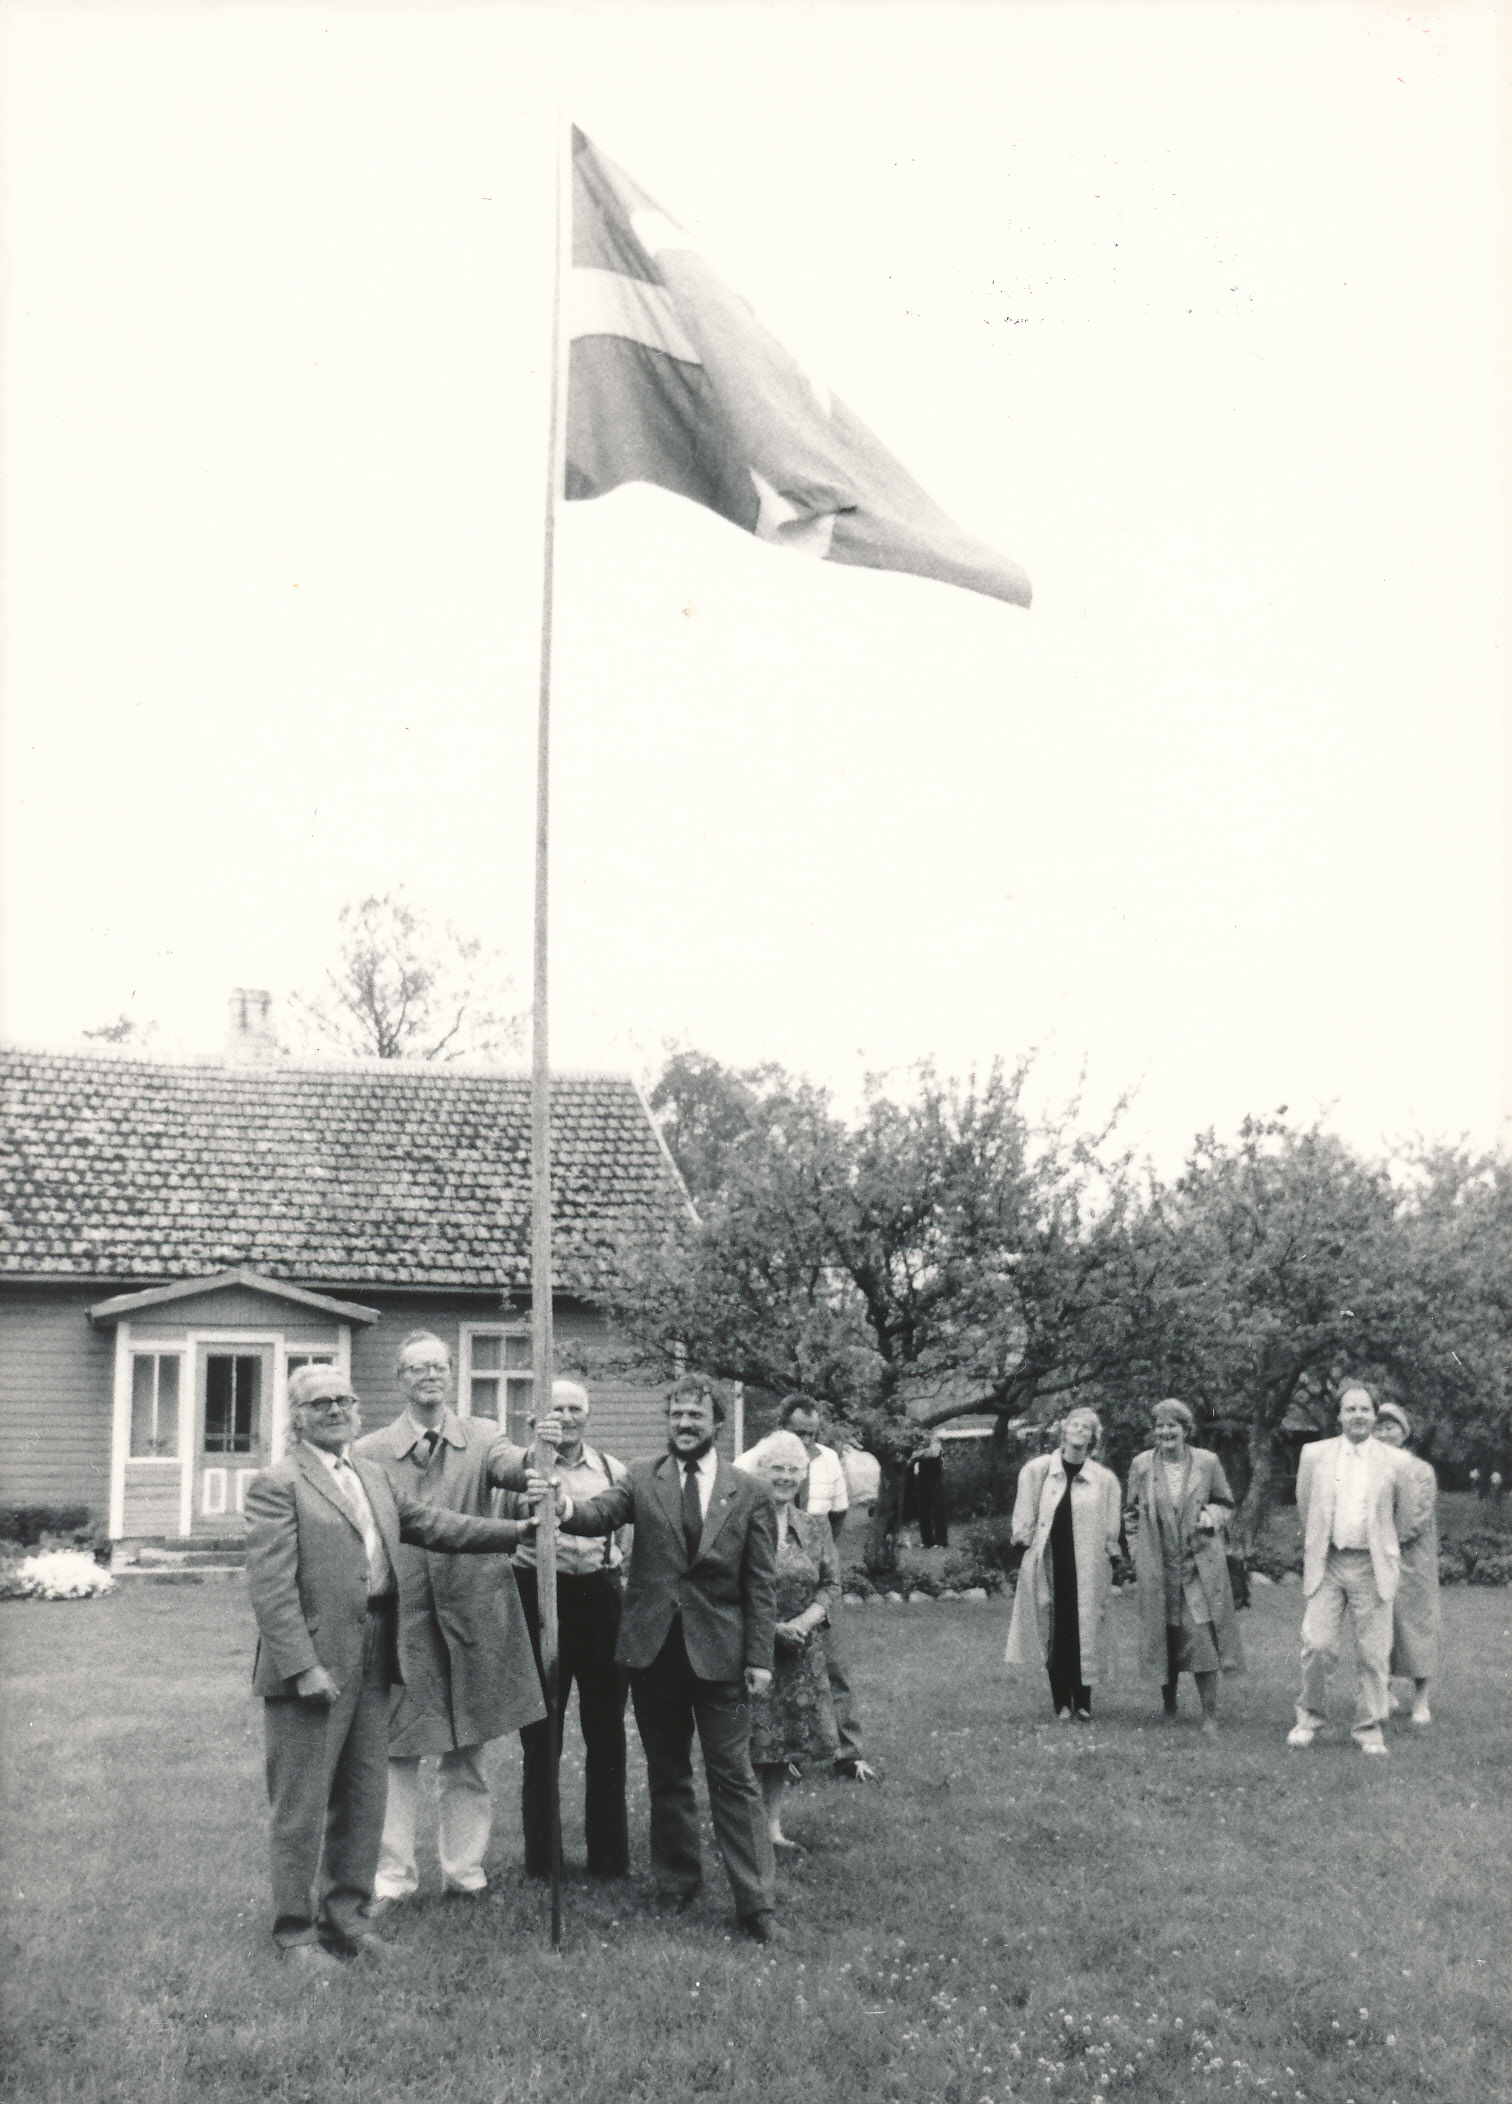 Rootsi lipu heiskamine Osmas Berggreni õuel